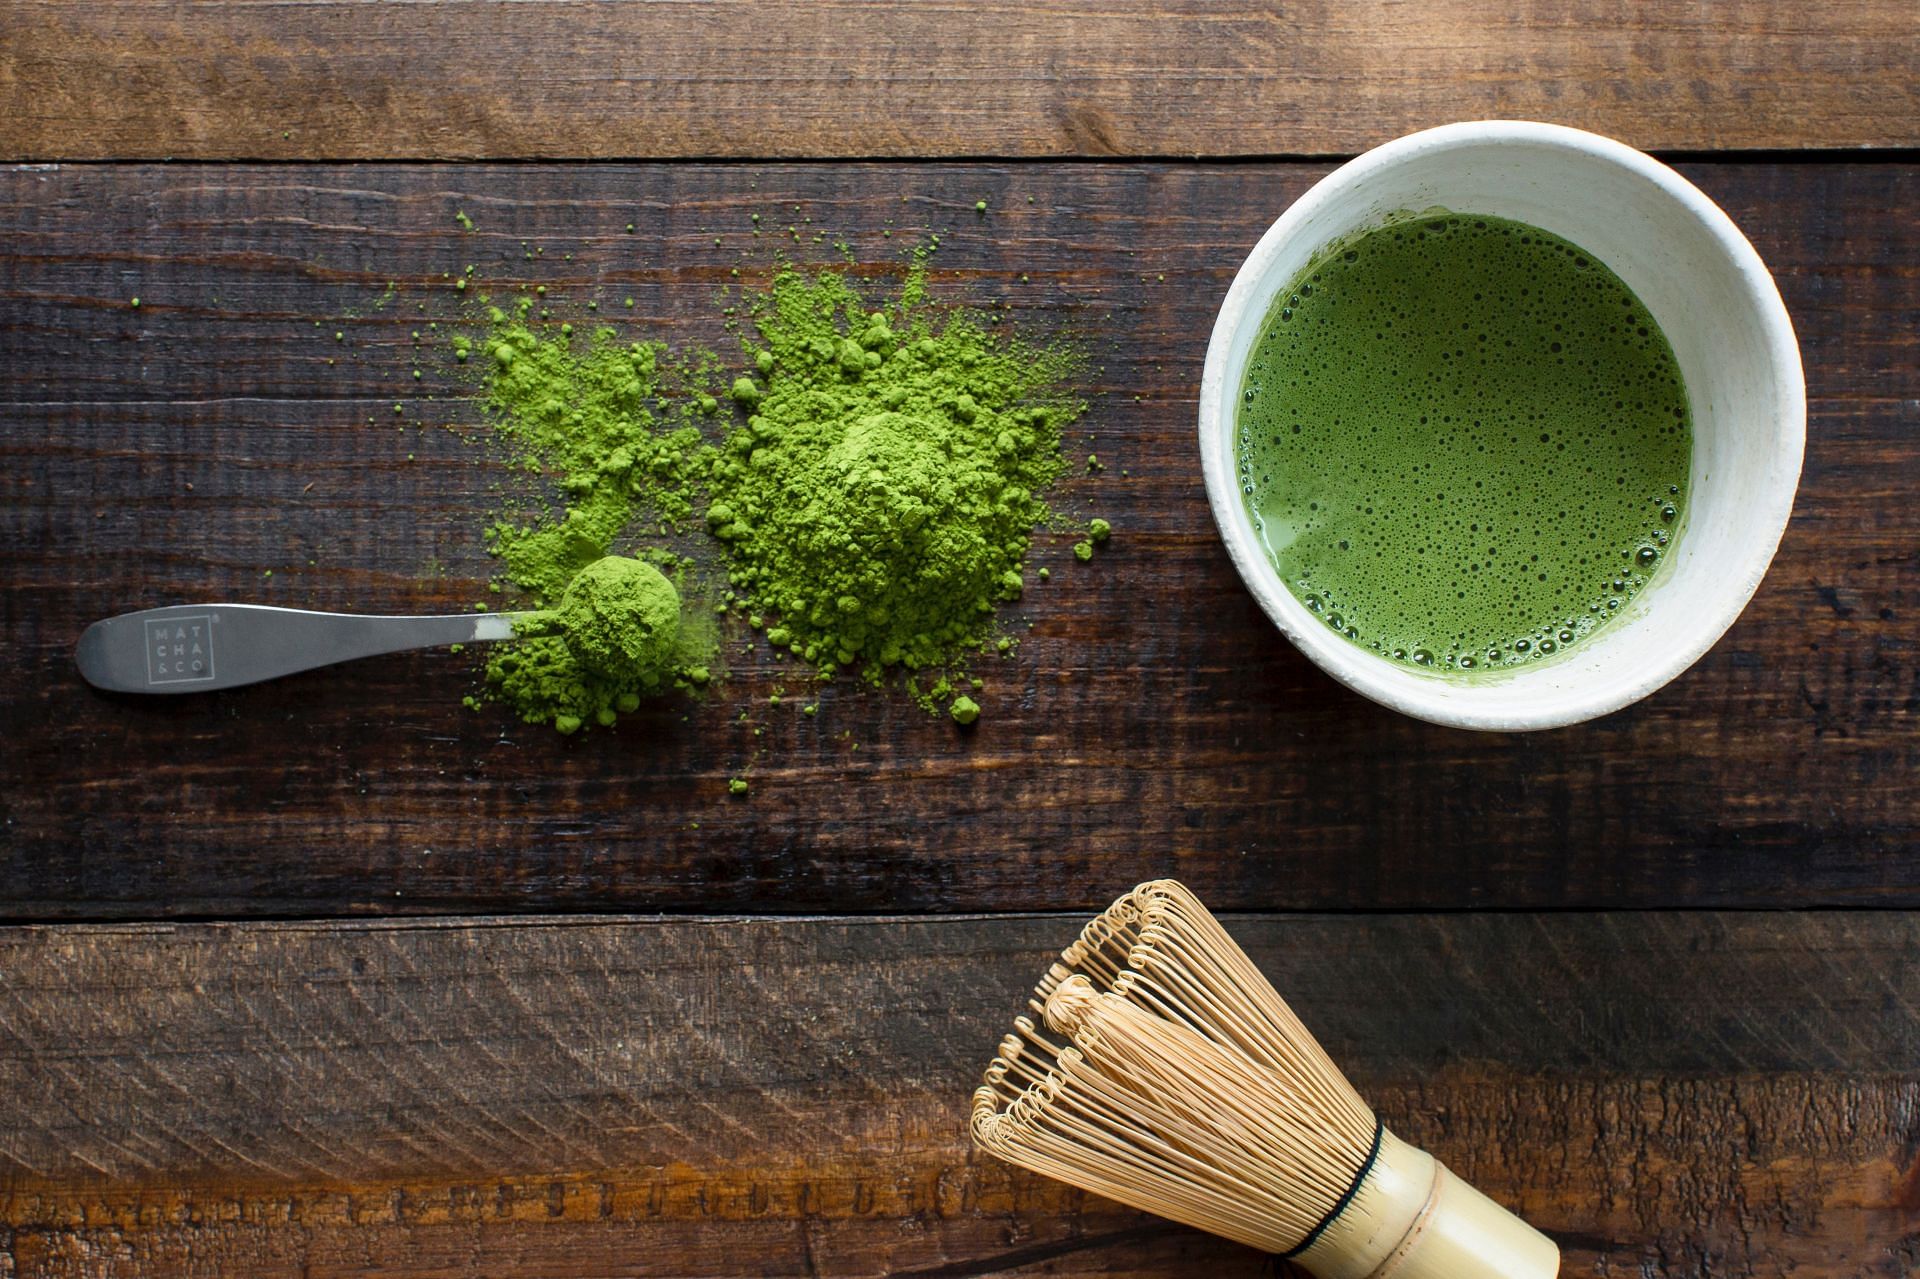 Le thé vert matcha peut augmenter votre taux métabolique.  (Image via unsplash/Matcha Co)